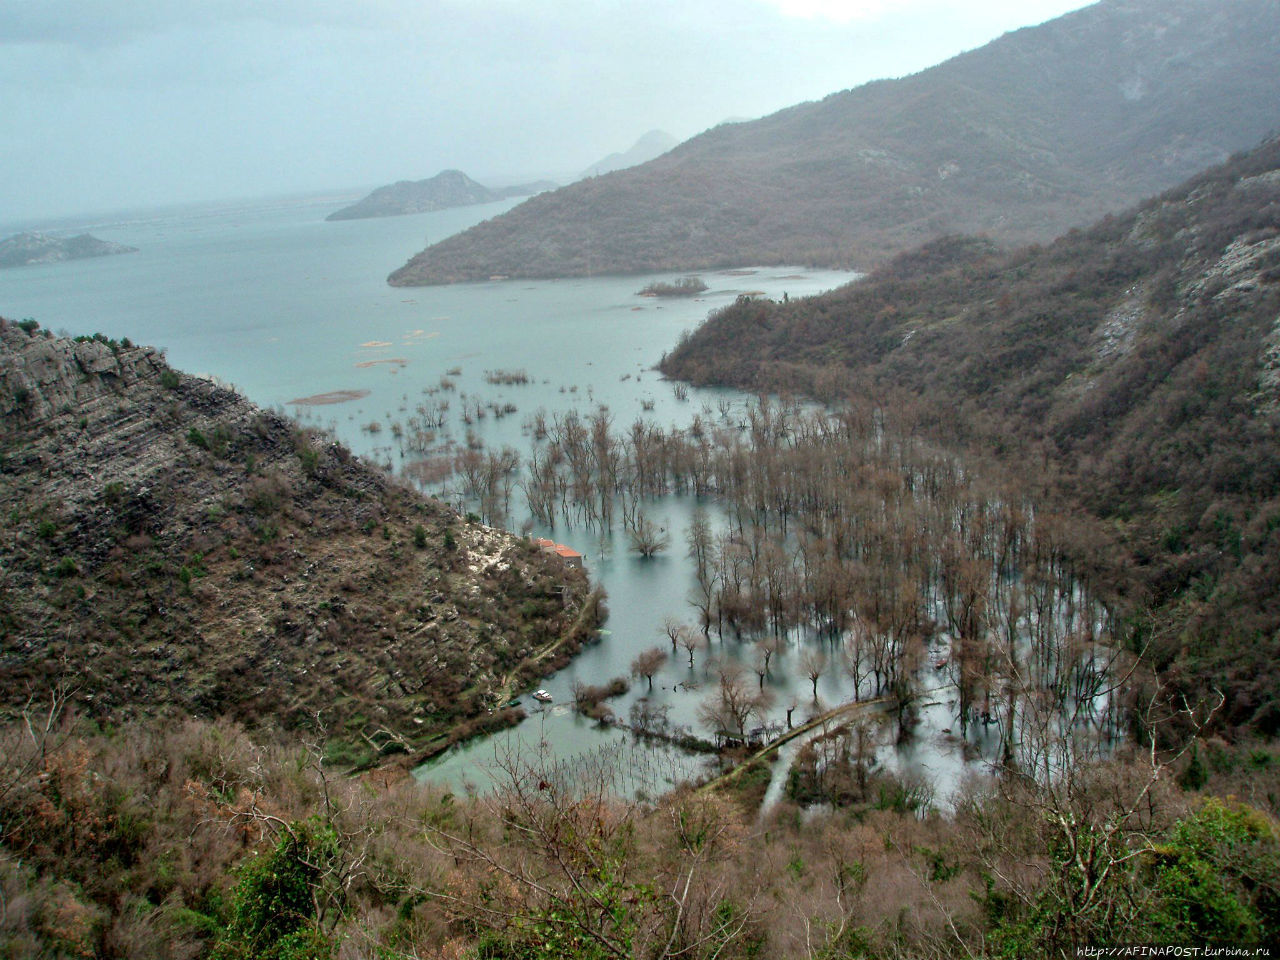 Скадарское озеро. Разлив Скадарское озеро, Черногория